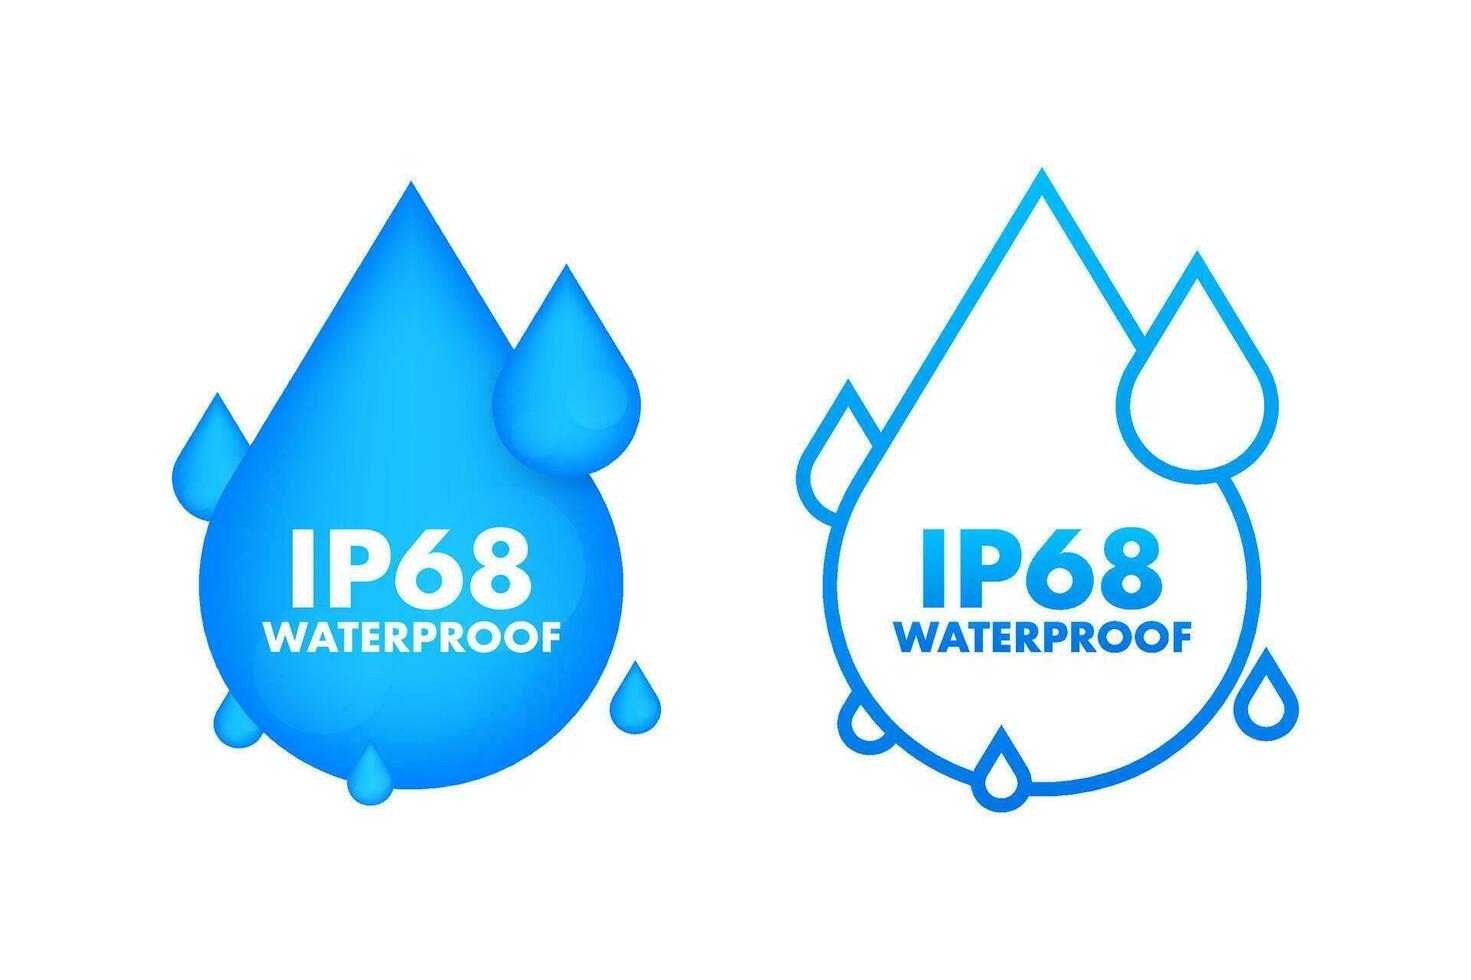 IP68 waterproof, water resistance level information sign. vector